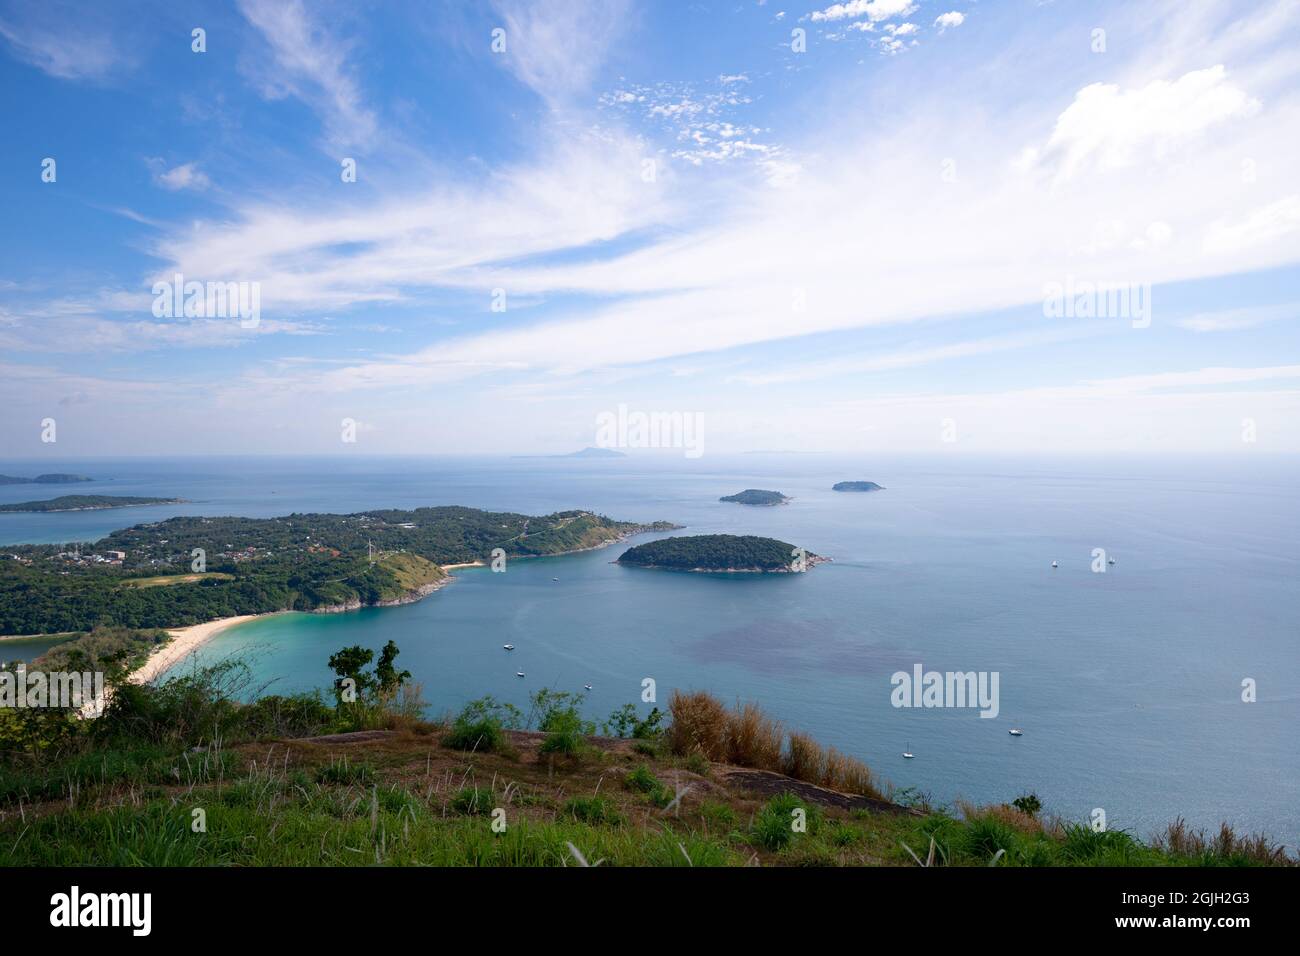 Landschaftsansicht Phahindum Aussichtspunkt beliebtes Wahrzeichen in Phuket Thailand Aussichtspunkt, um das kap promthep, den Strand von Naiharn und den schönen Strand von Yanui zu sehen Stockfoto